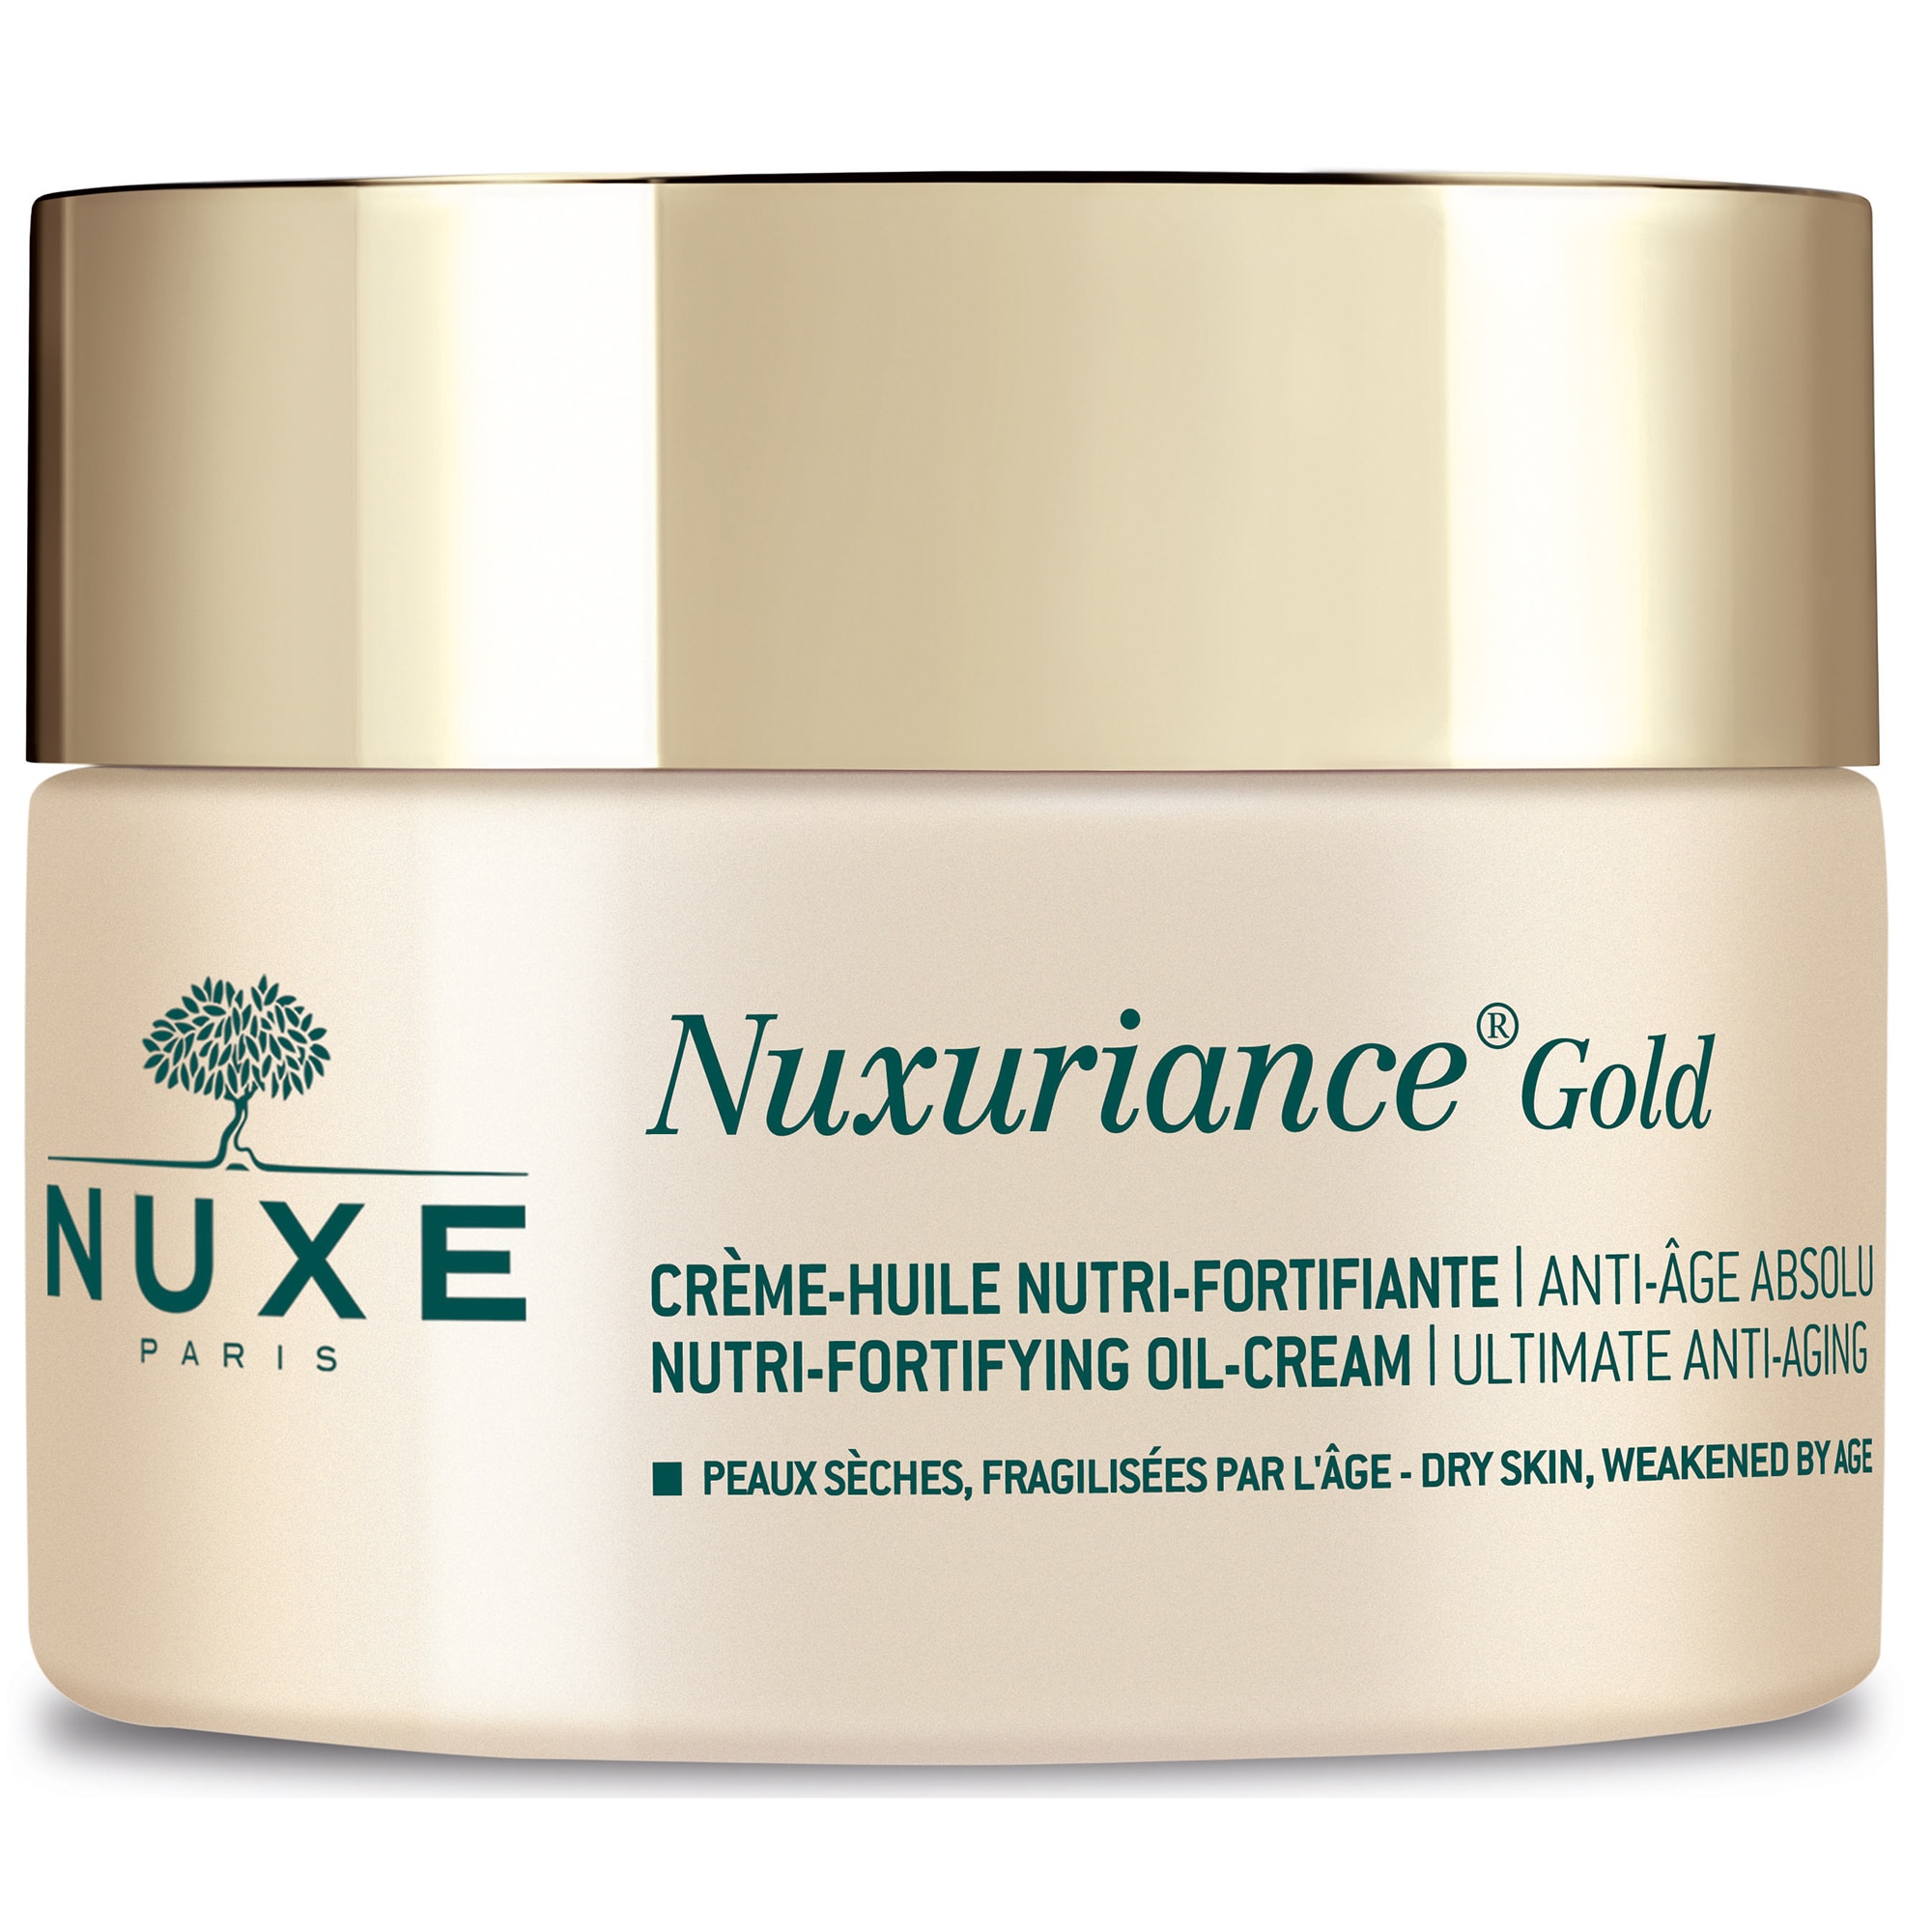 nuxuriance gold erősítő nutri olaj krém anti age abszolút nuova anti aging krém vélemények